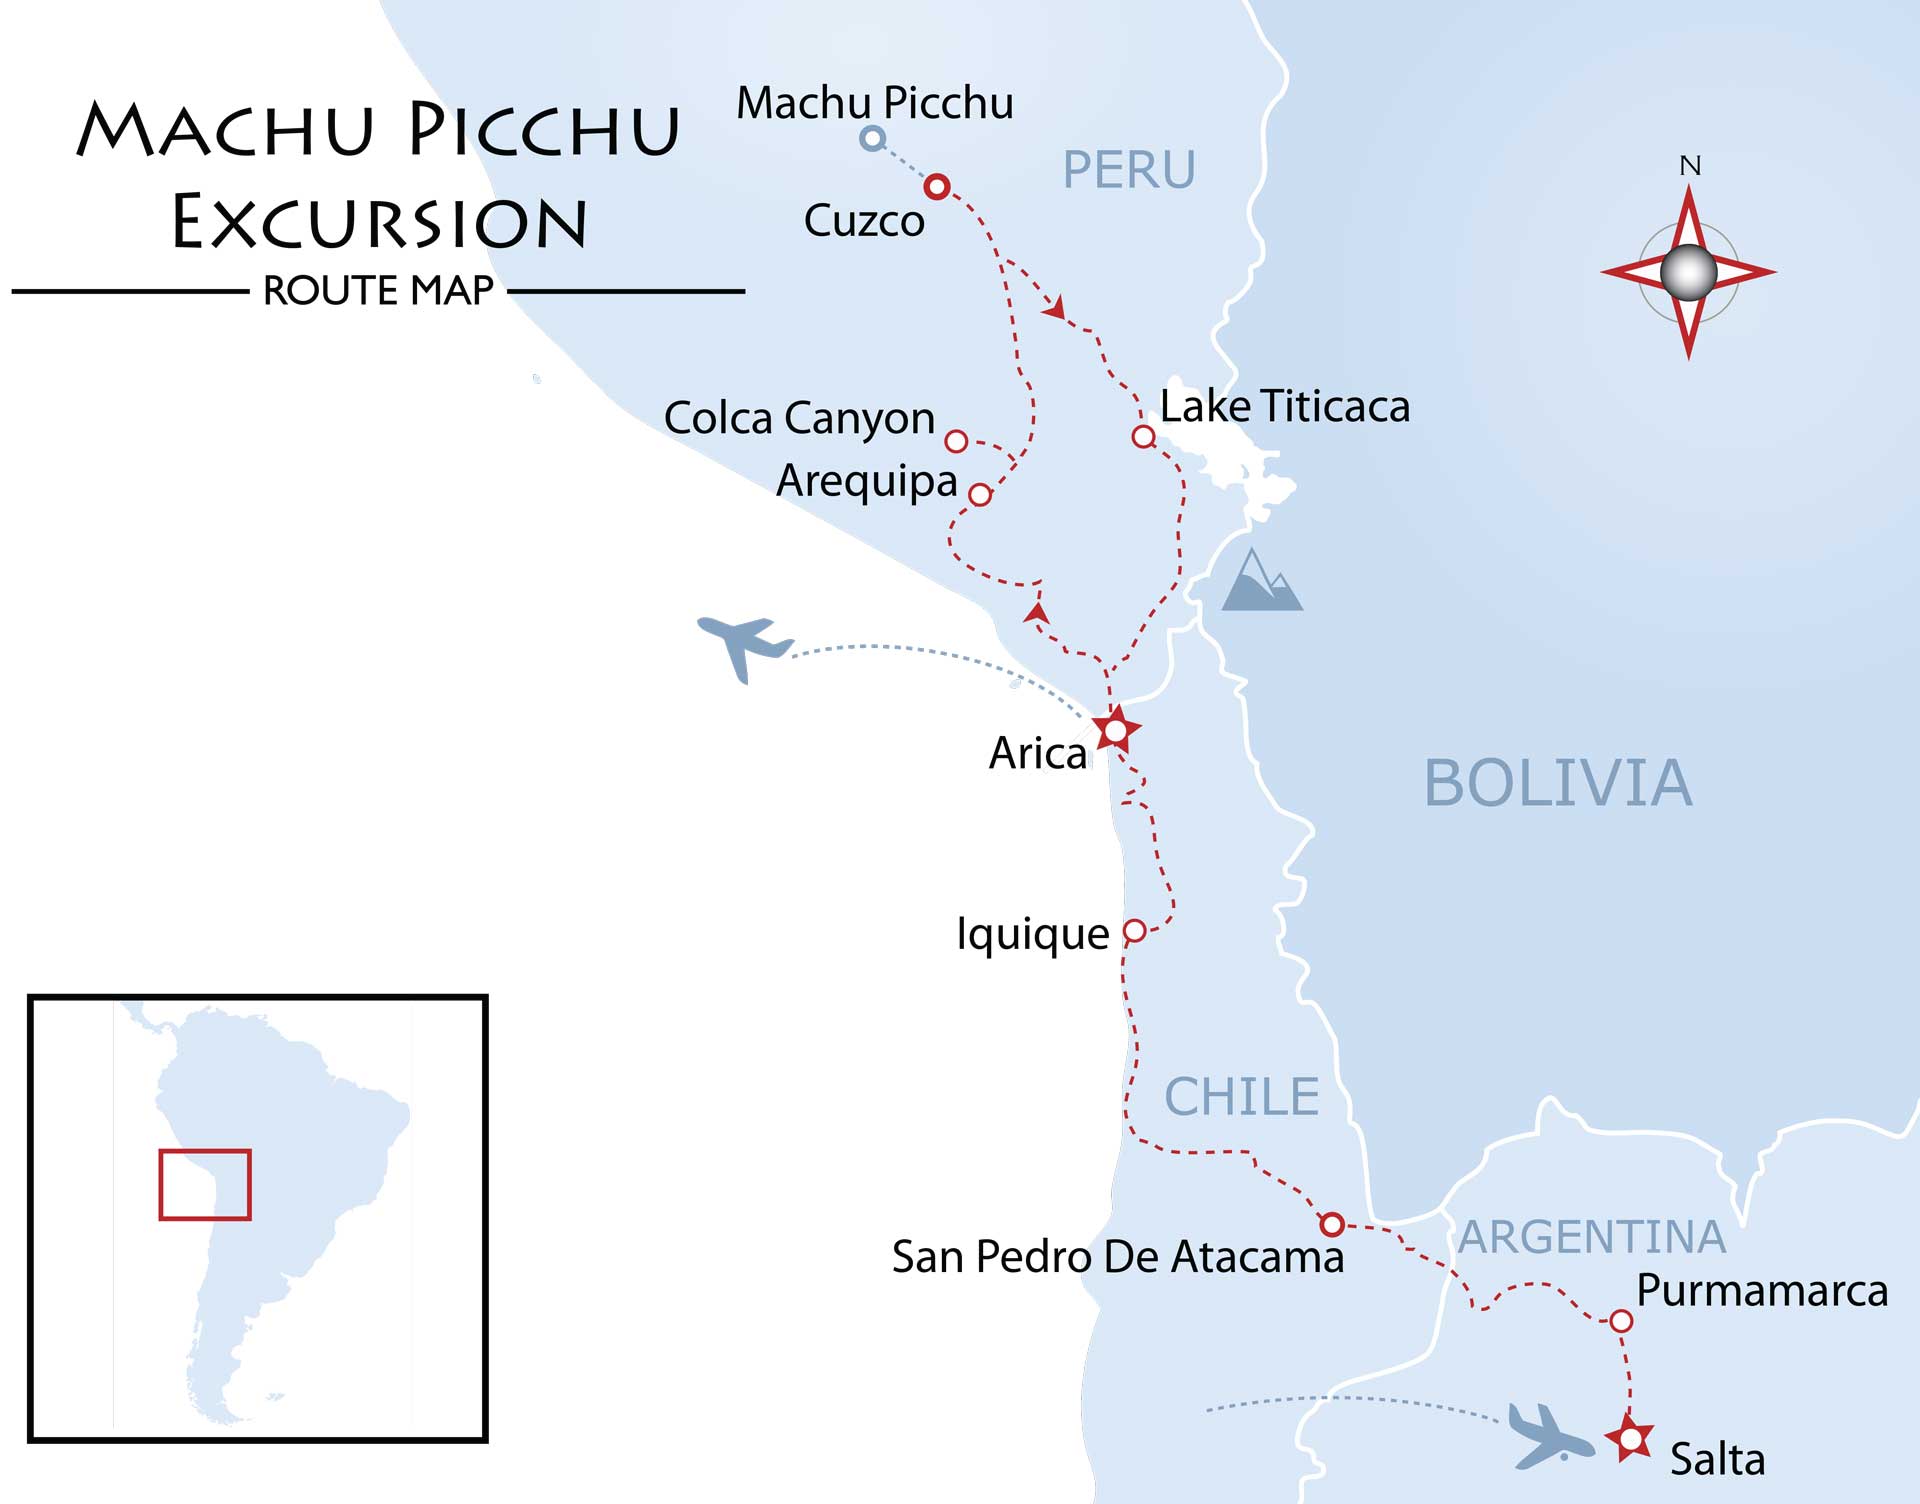 Machu Picchu Excursion Map